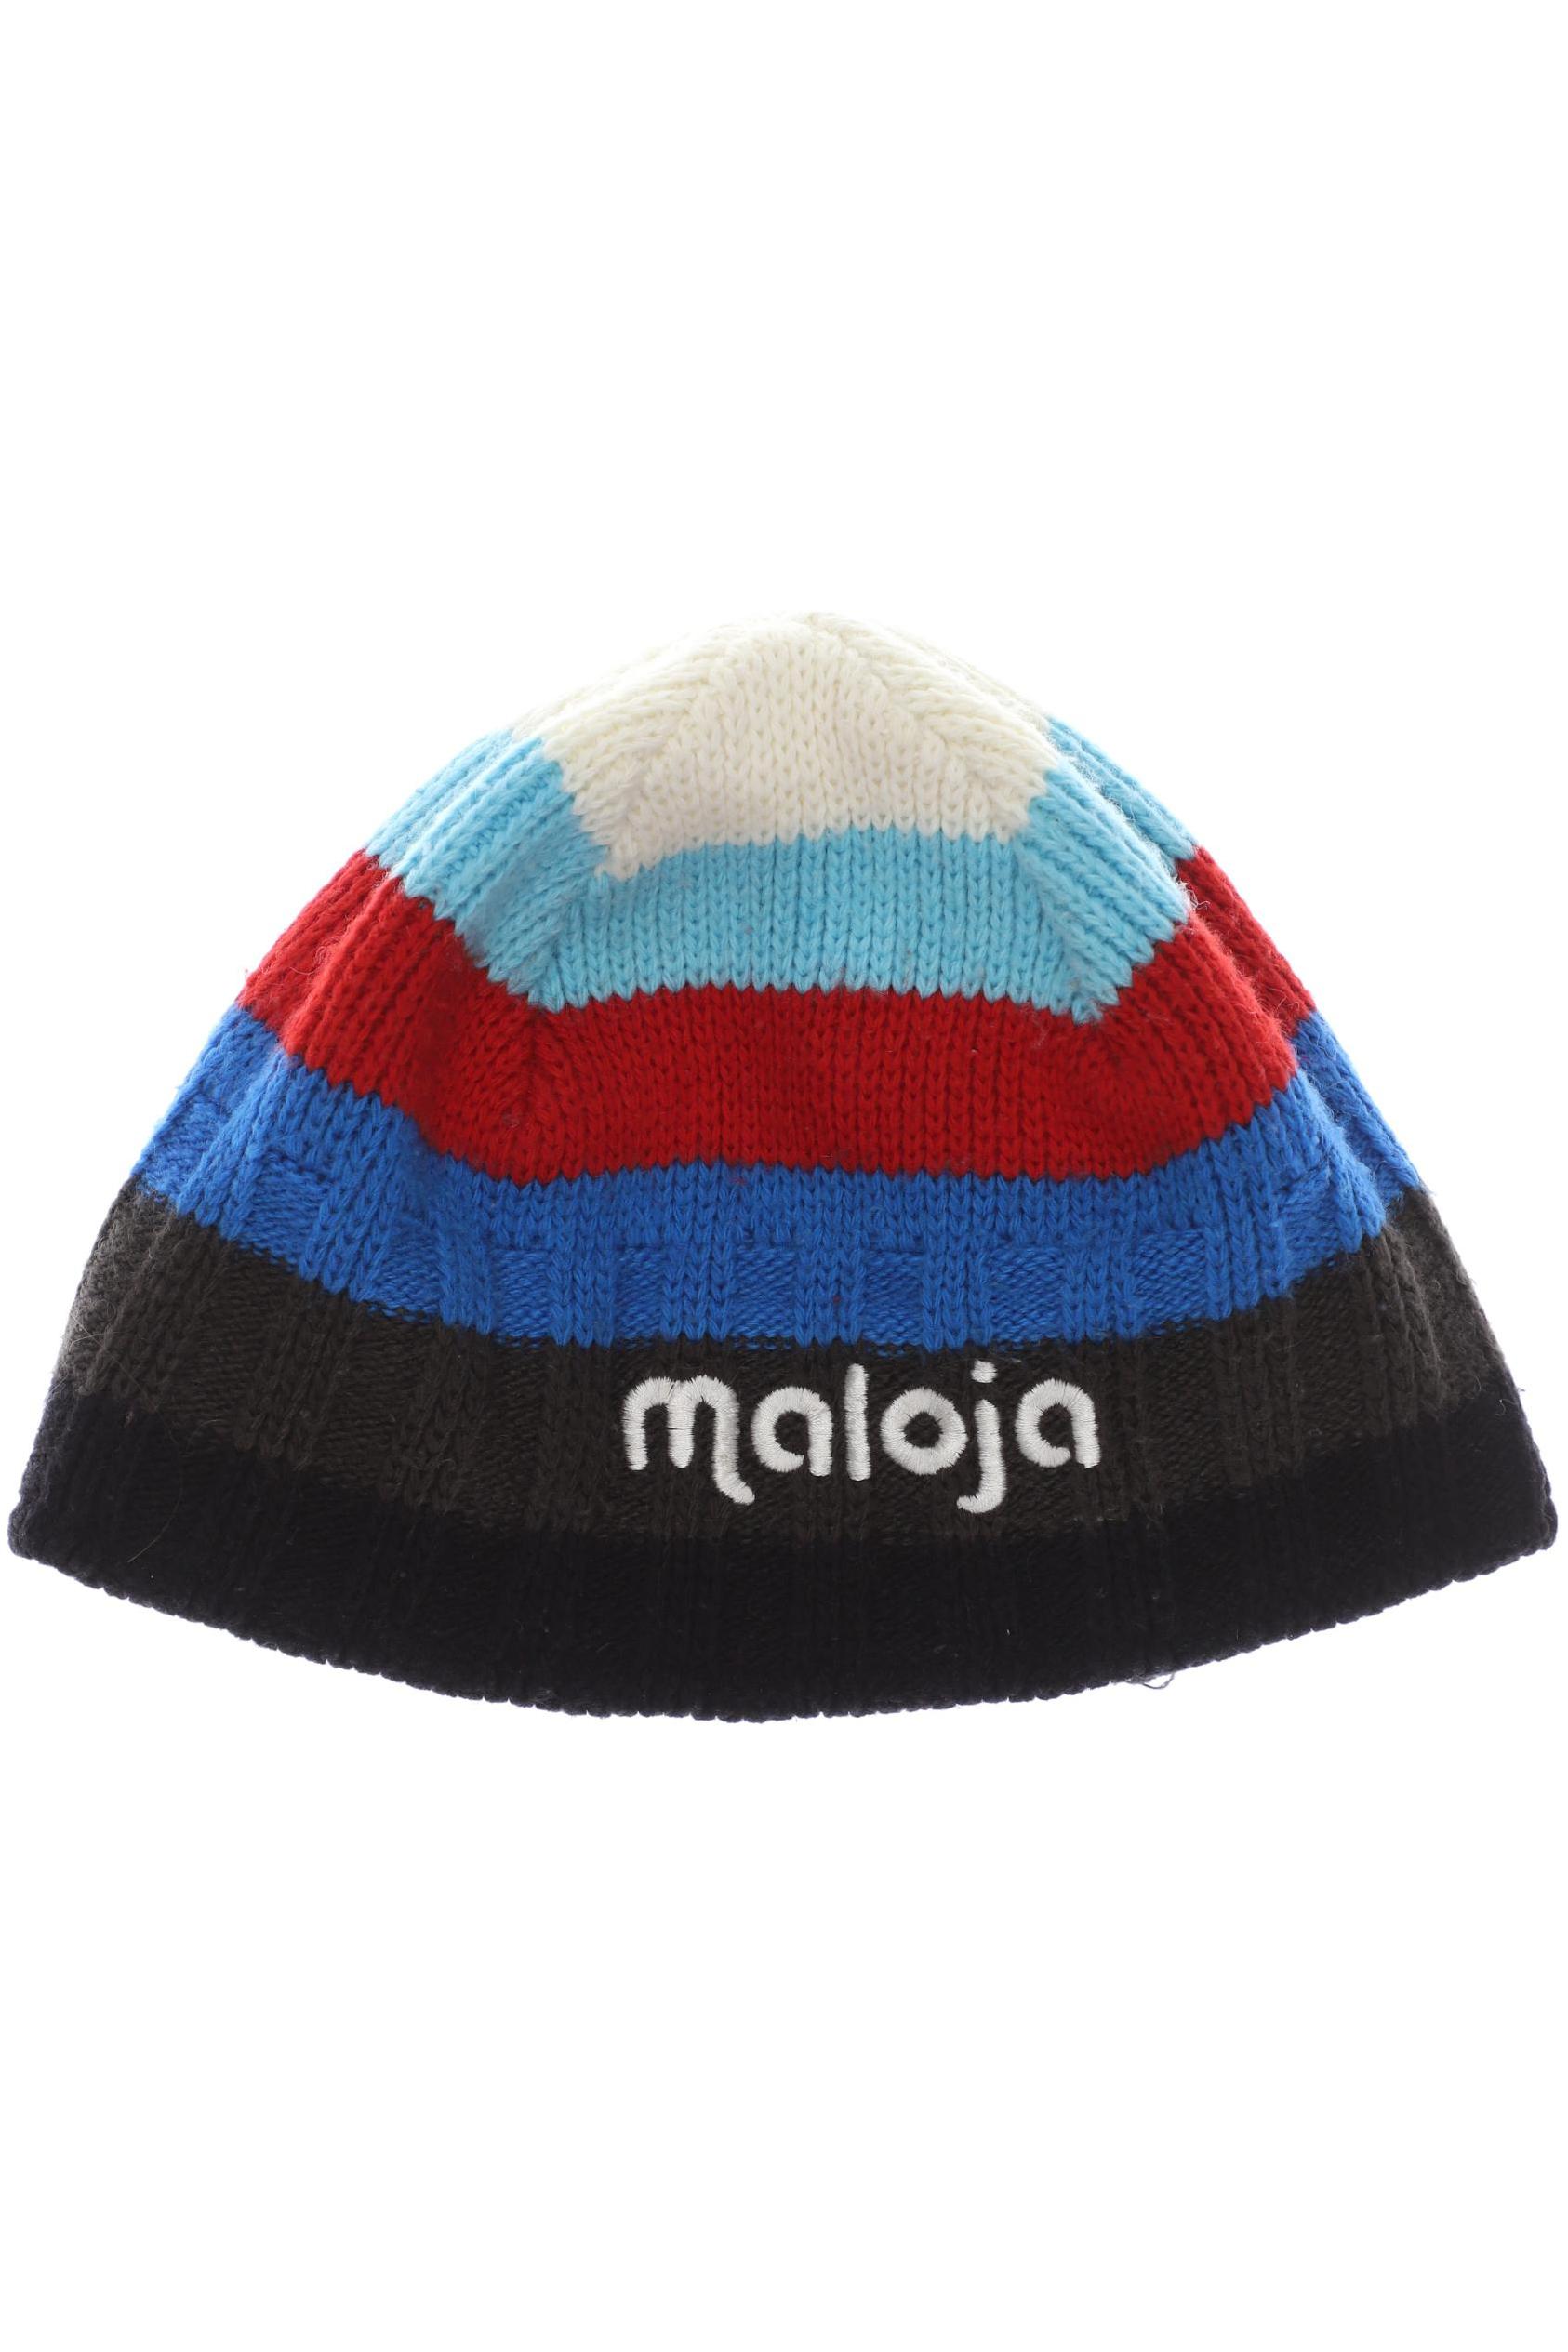 Maloja Jungen Hut/Mütze, mehrfarbig von Maloja